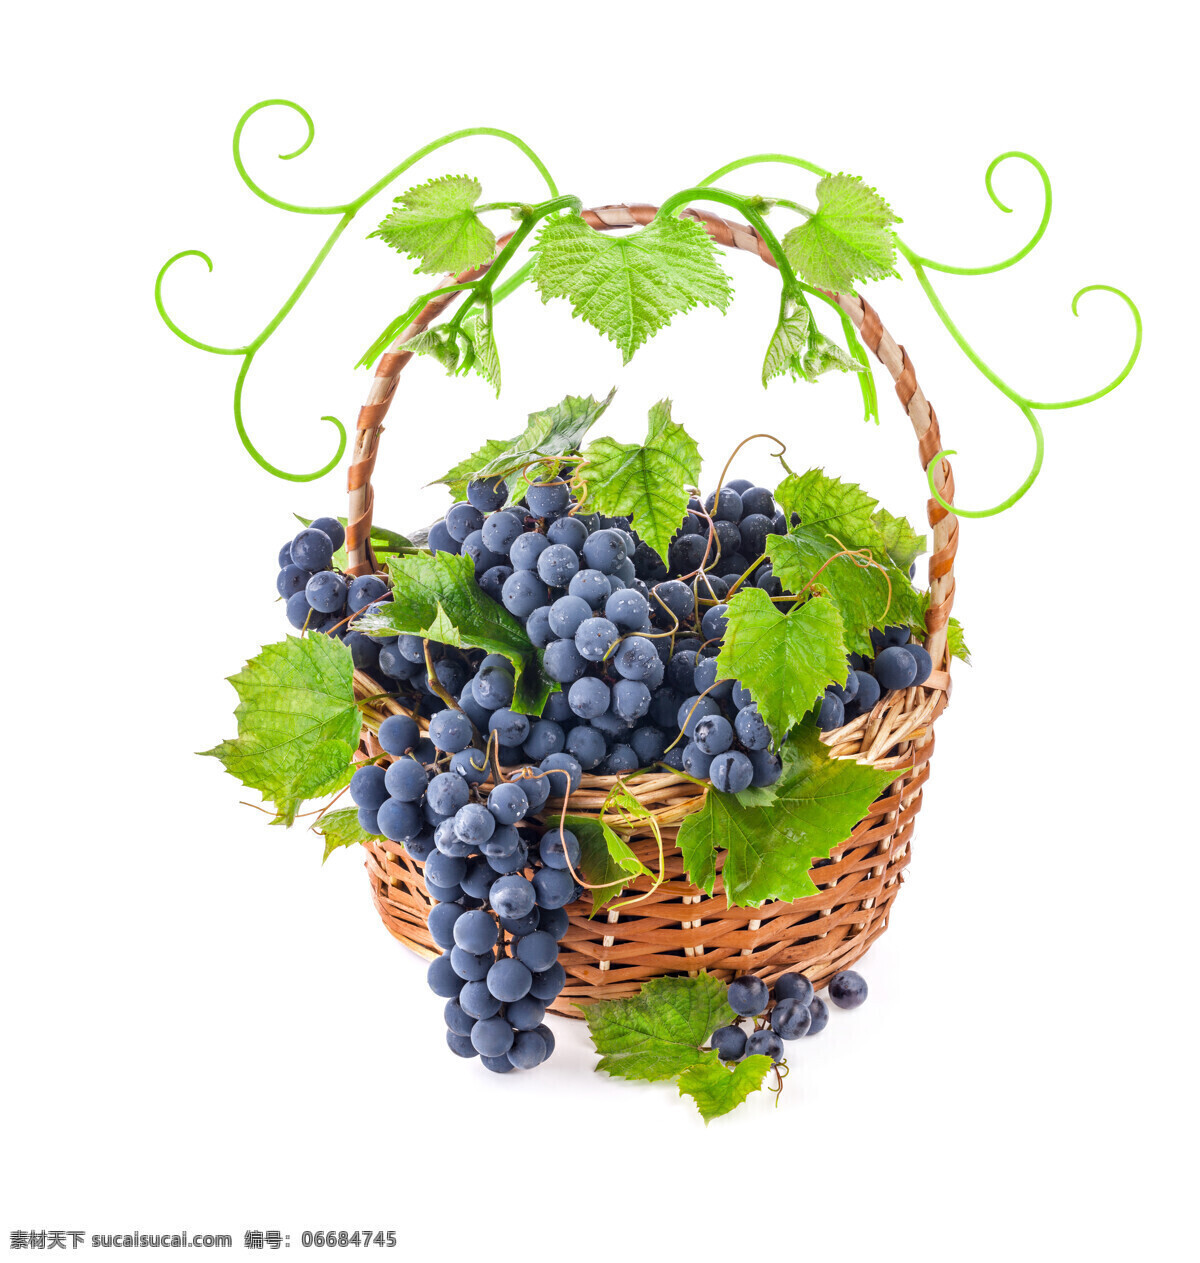 水果篮子 里 葡萄 紫葡萄 新鲜葡萄 新鲜水果 葡萄叶子 绿叶 果篮 水果蔬菜 餐饮美食 白色